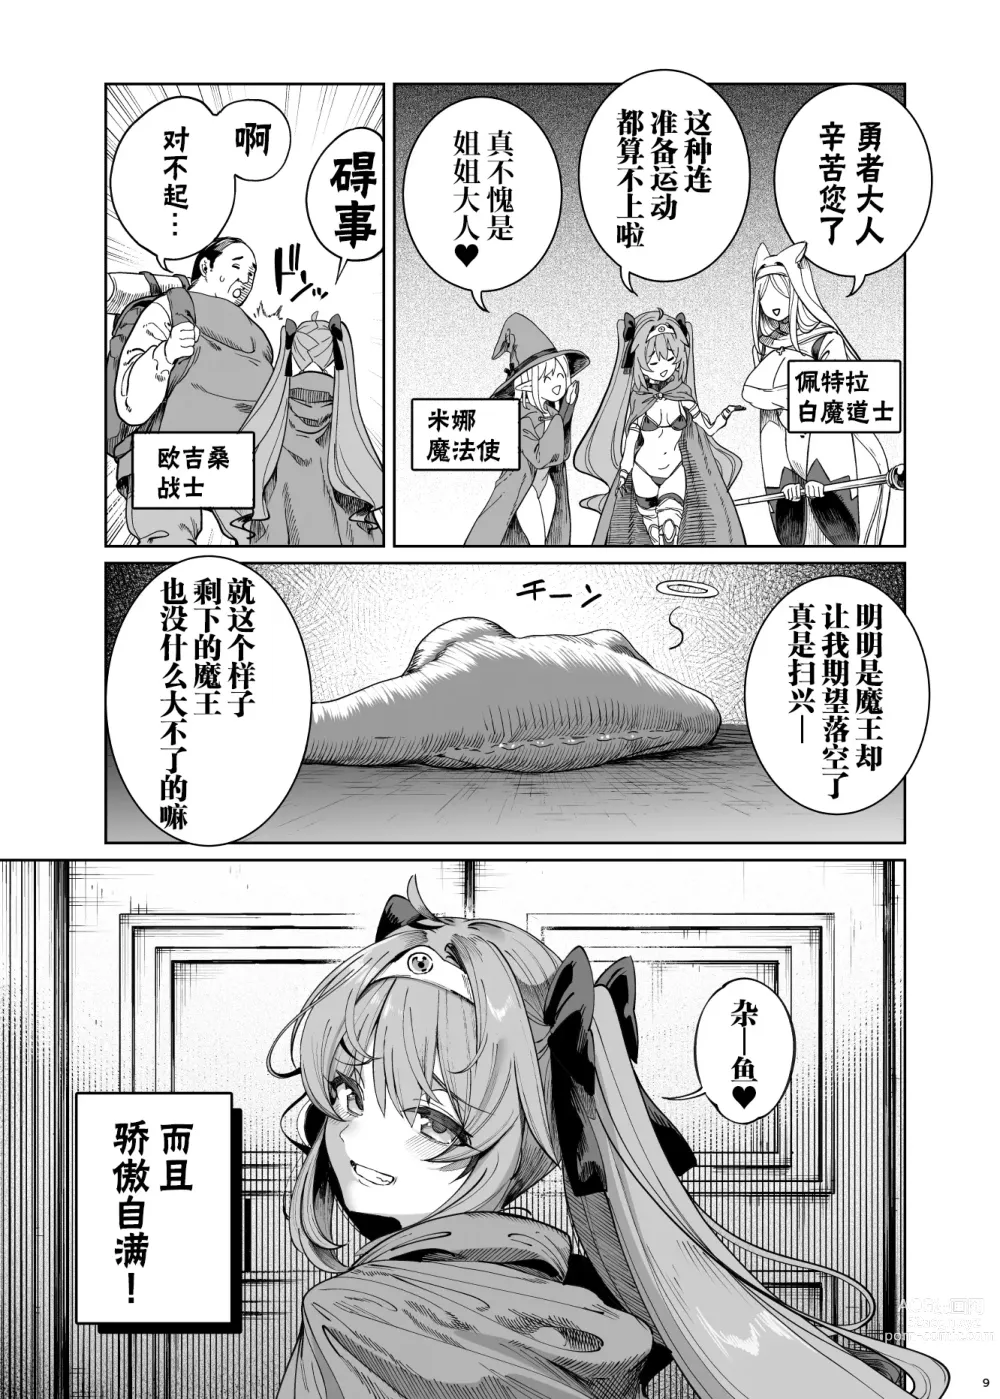 Page 8 of manga 異世界わからせおじさん 勇者凌辱編